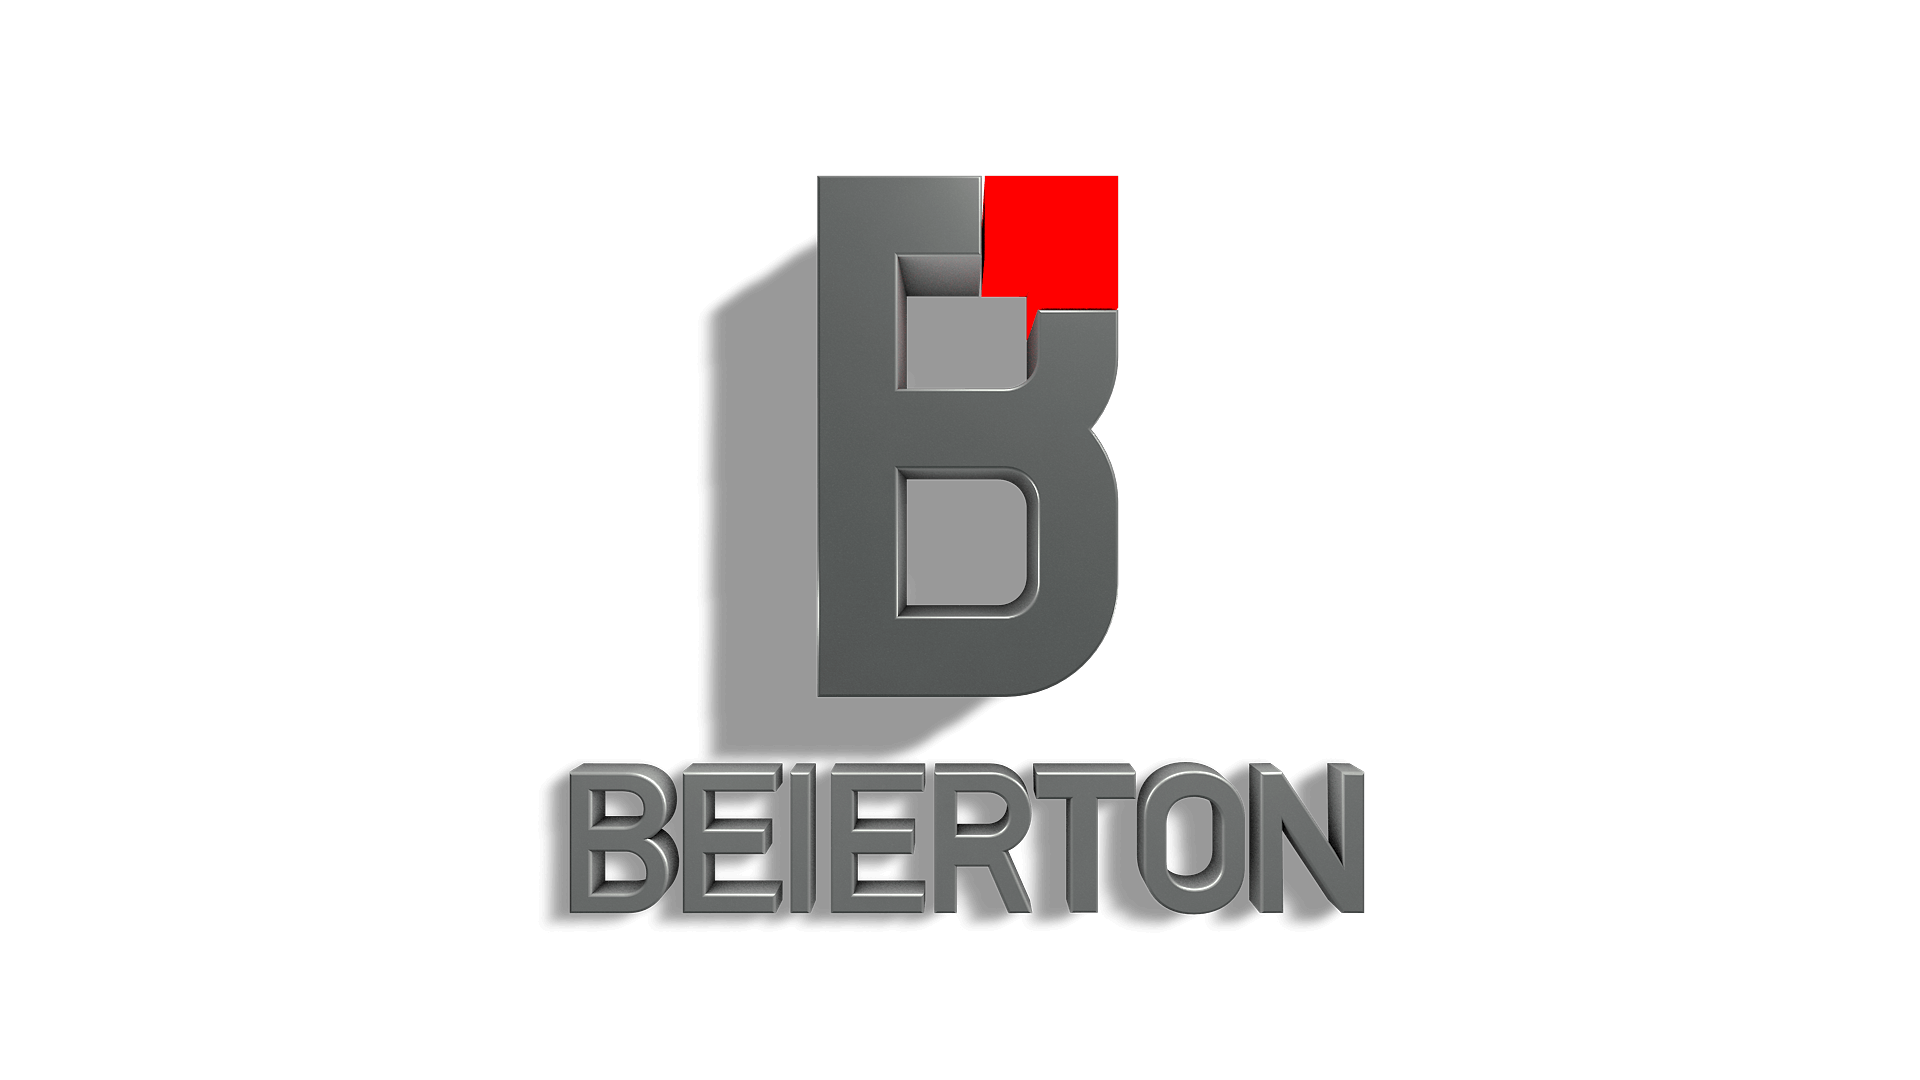 U П образный профиль Beierton